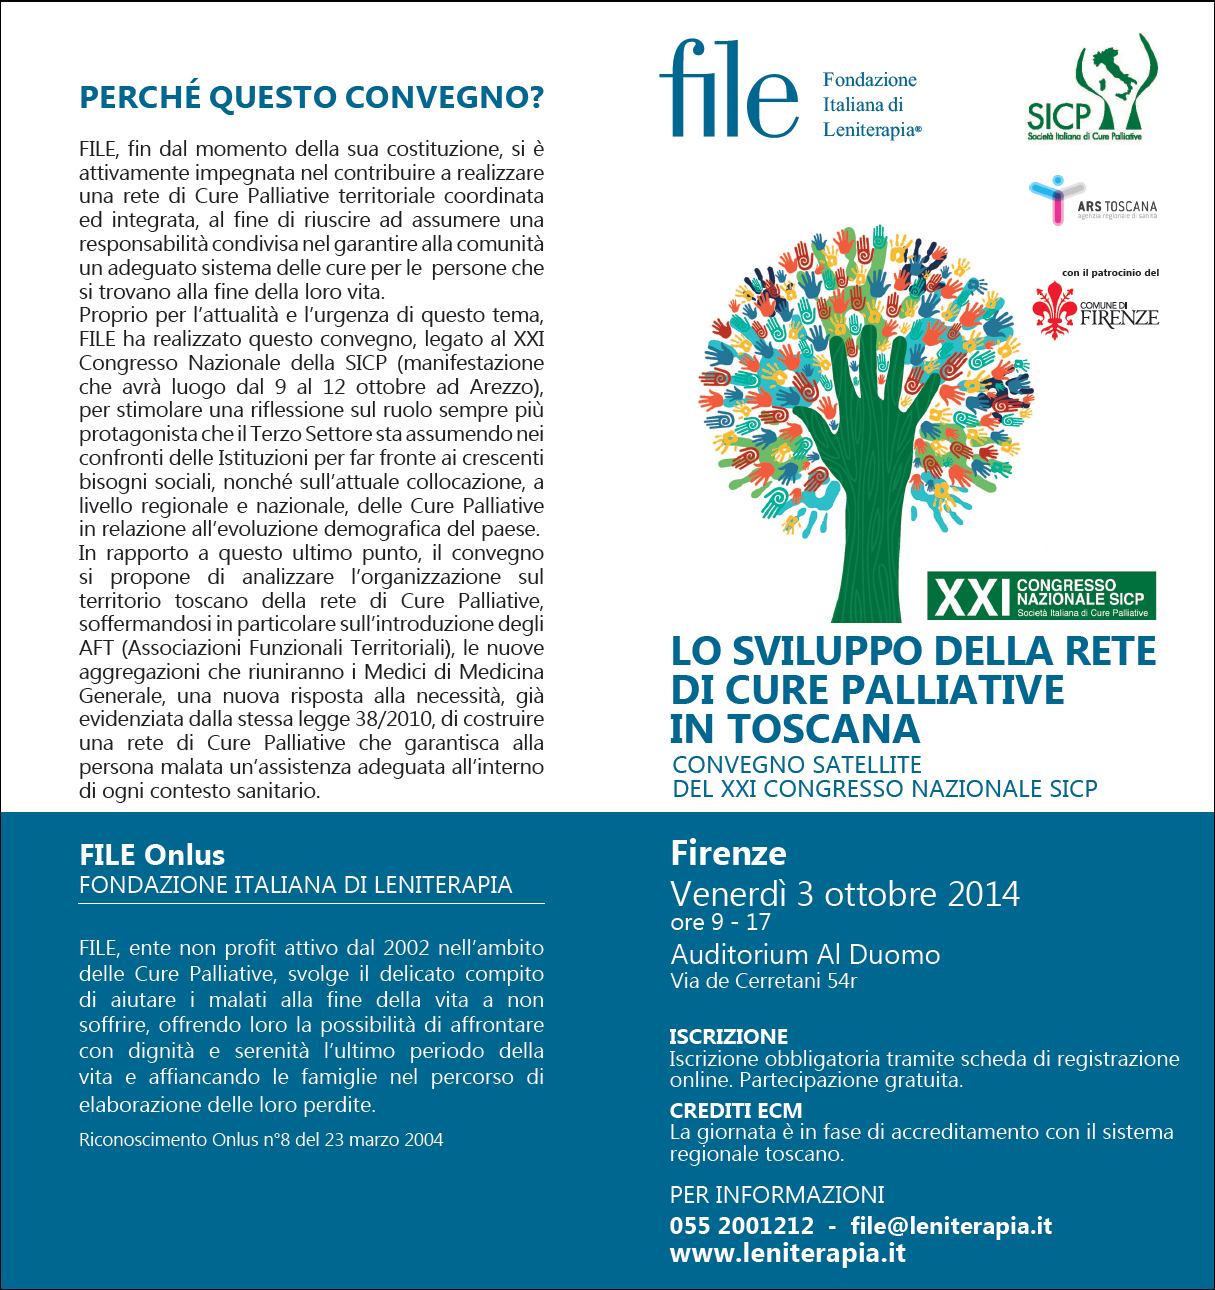 Lo sviluppo della rete di cure palliative in Toscana